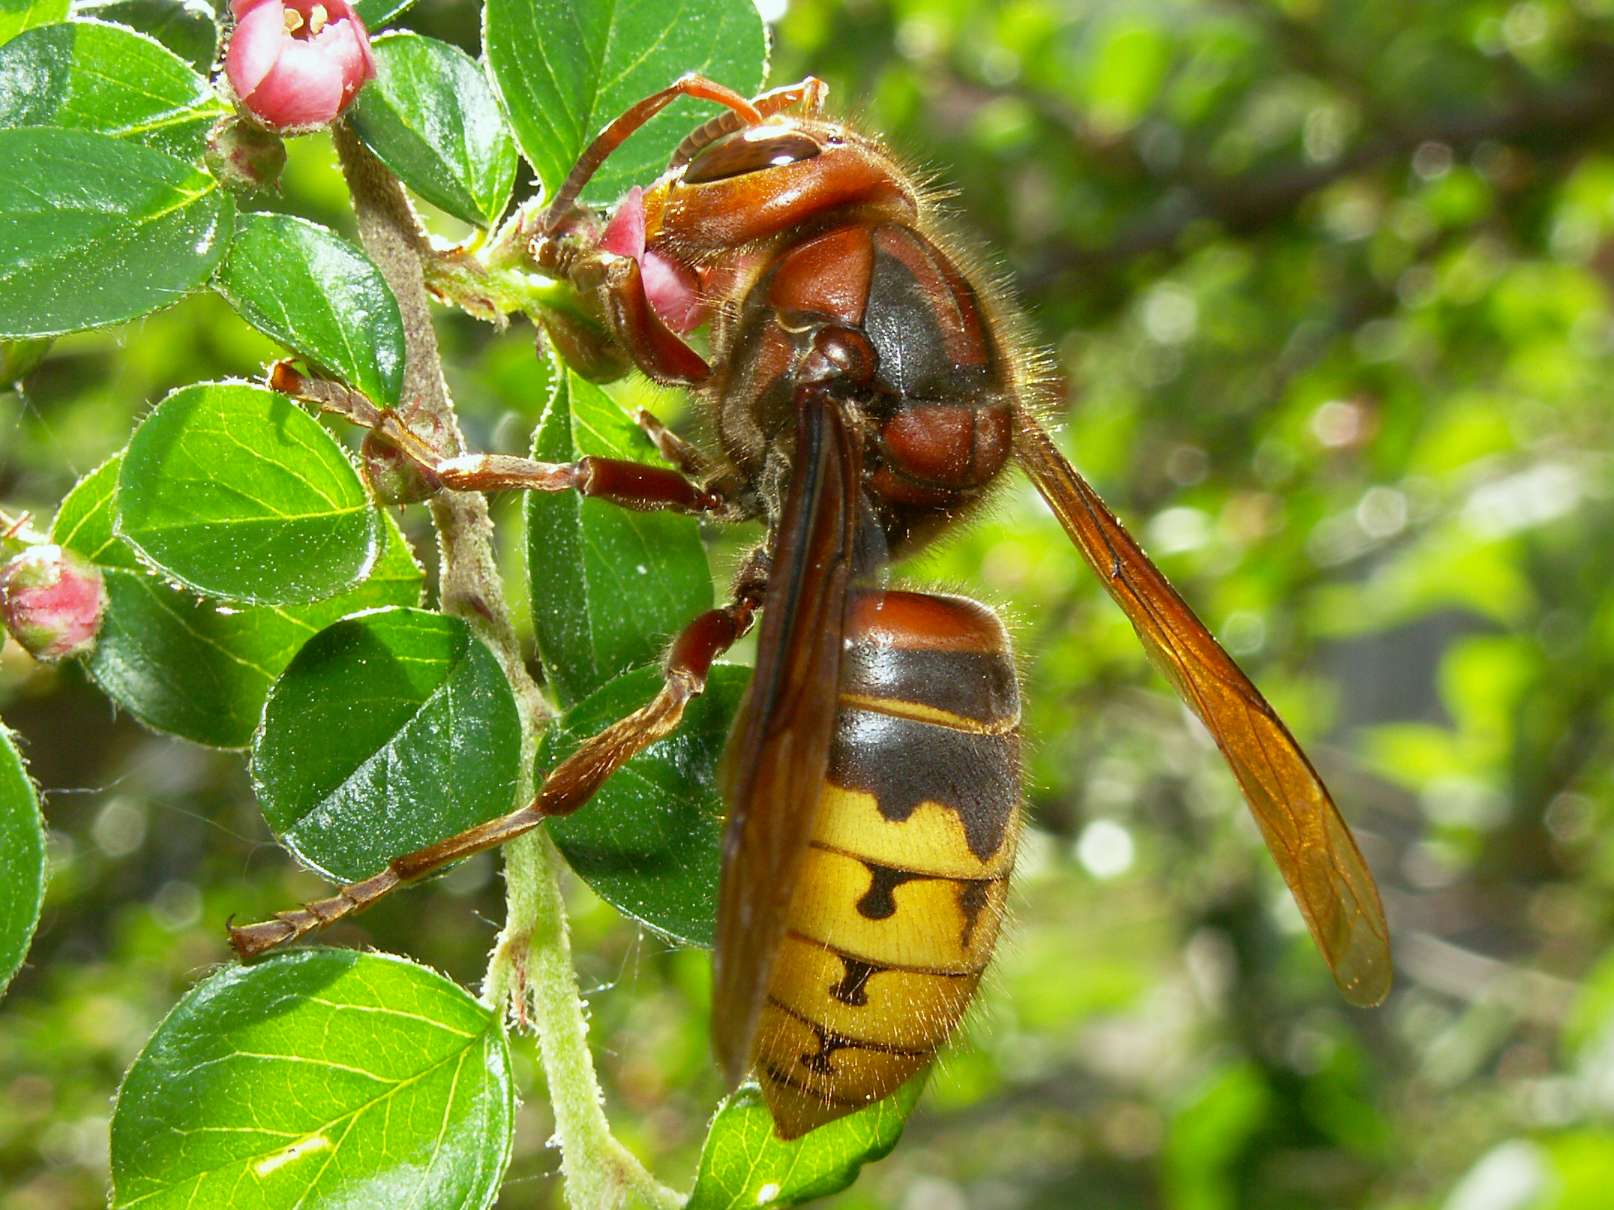 A Hornet feeding on nectar